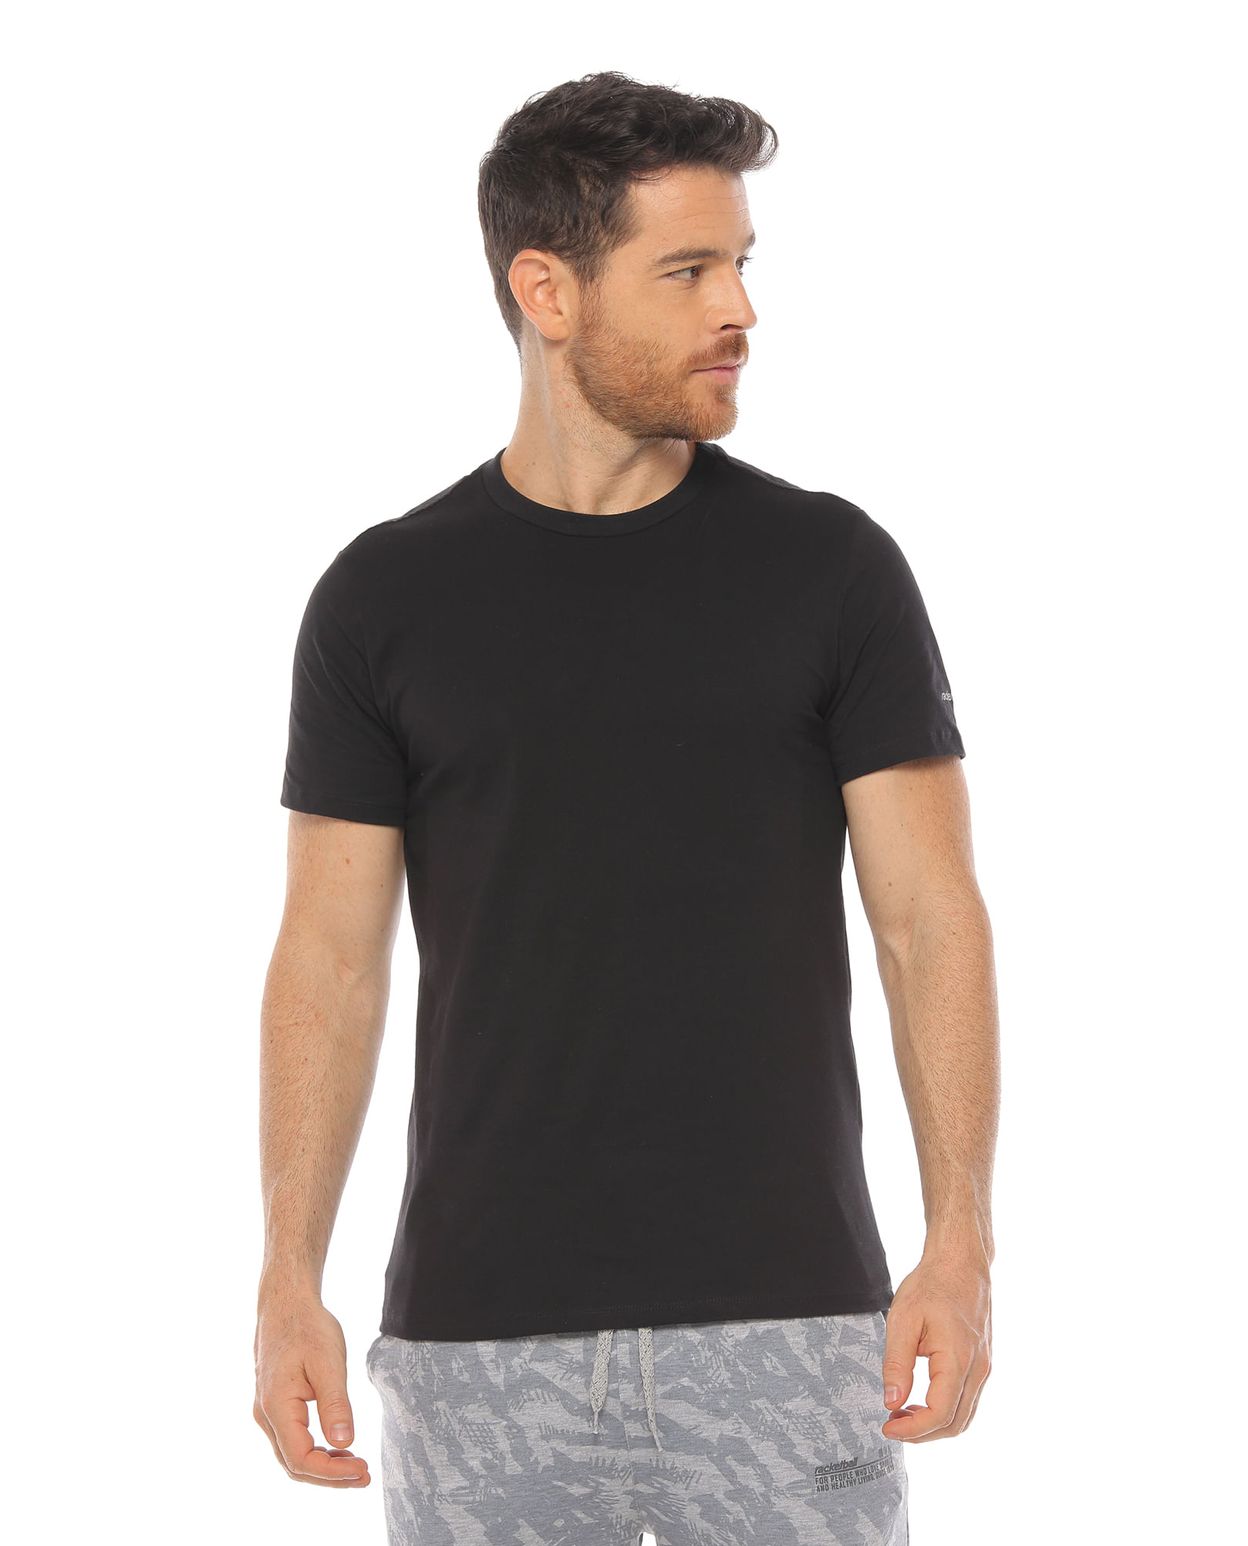 camiseta manga corta color negra para hombre